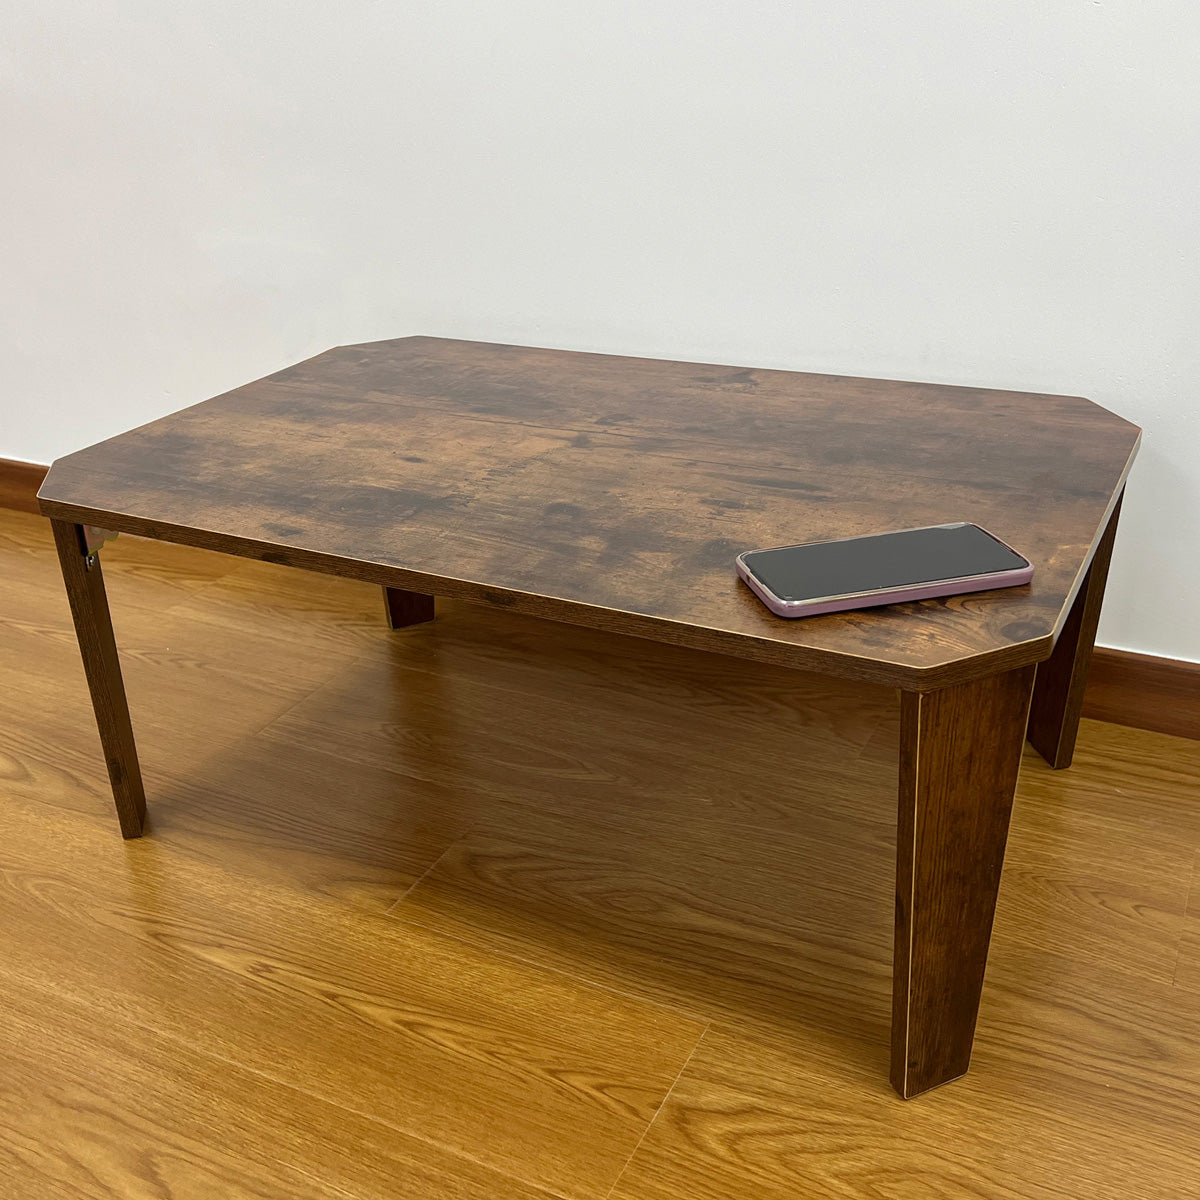 折りたたみテーブル イルクス75×50cm